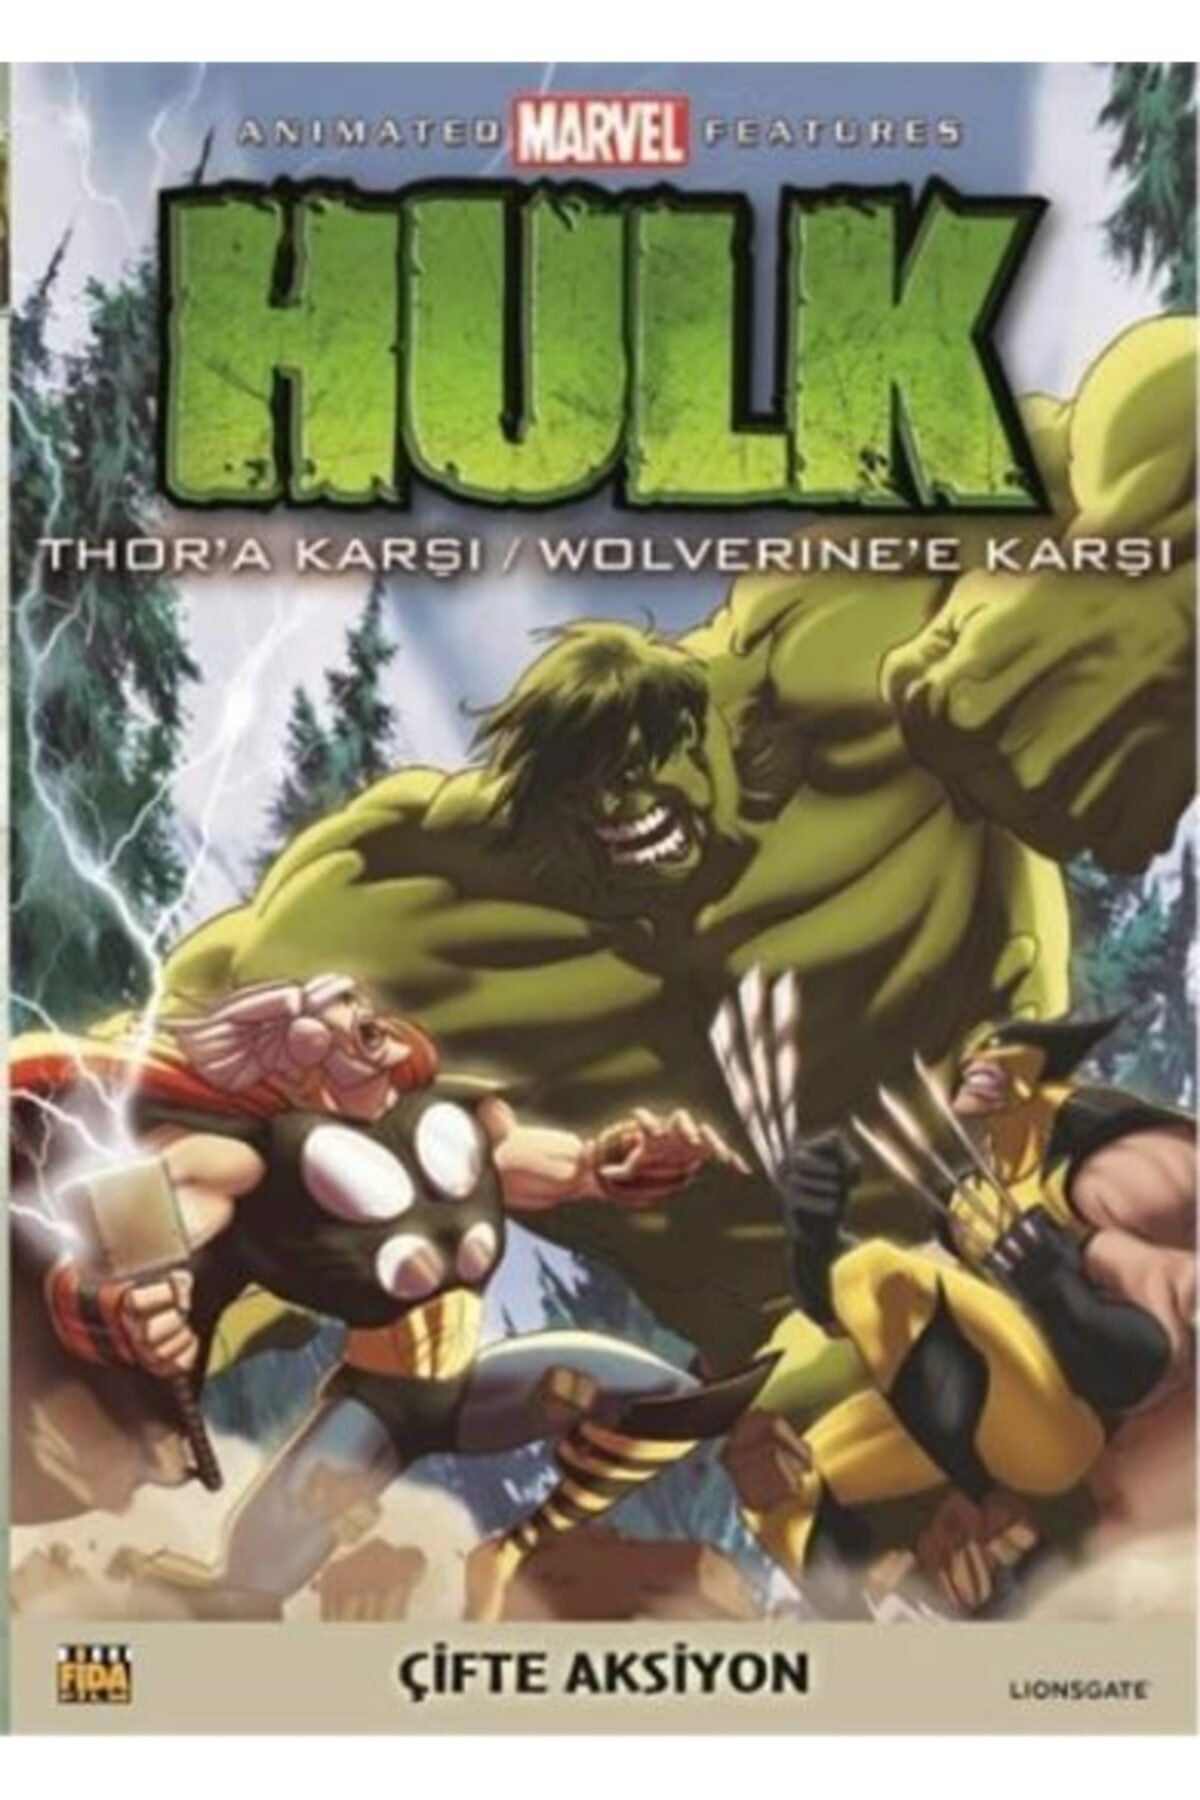 MARVEL Hulk Thor'a Karşı ve Hulk Wolverine'e Karşı Dvd